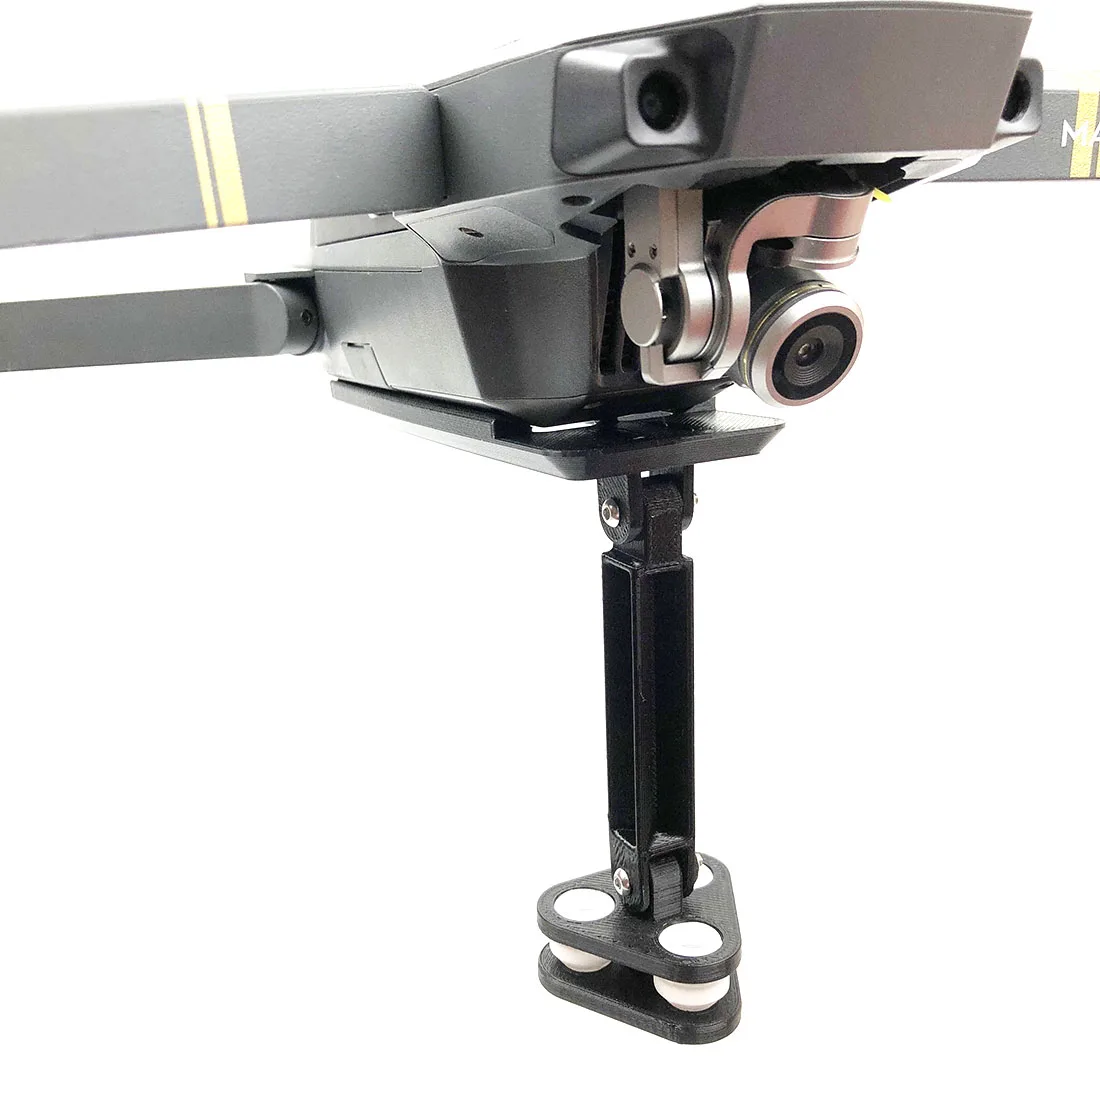 HOBBYINRC амортизирующий кронштейн для крепления спортивной камеры с углом обзора 360 градусов, запчасти для панорамной камеры DJI Mavic Pro, аксессуары для дрона